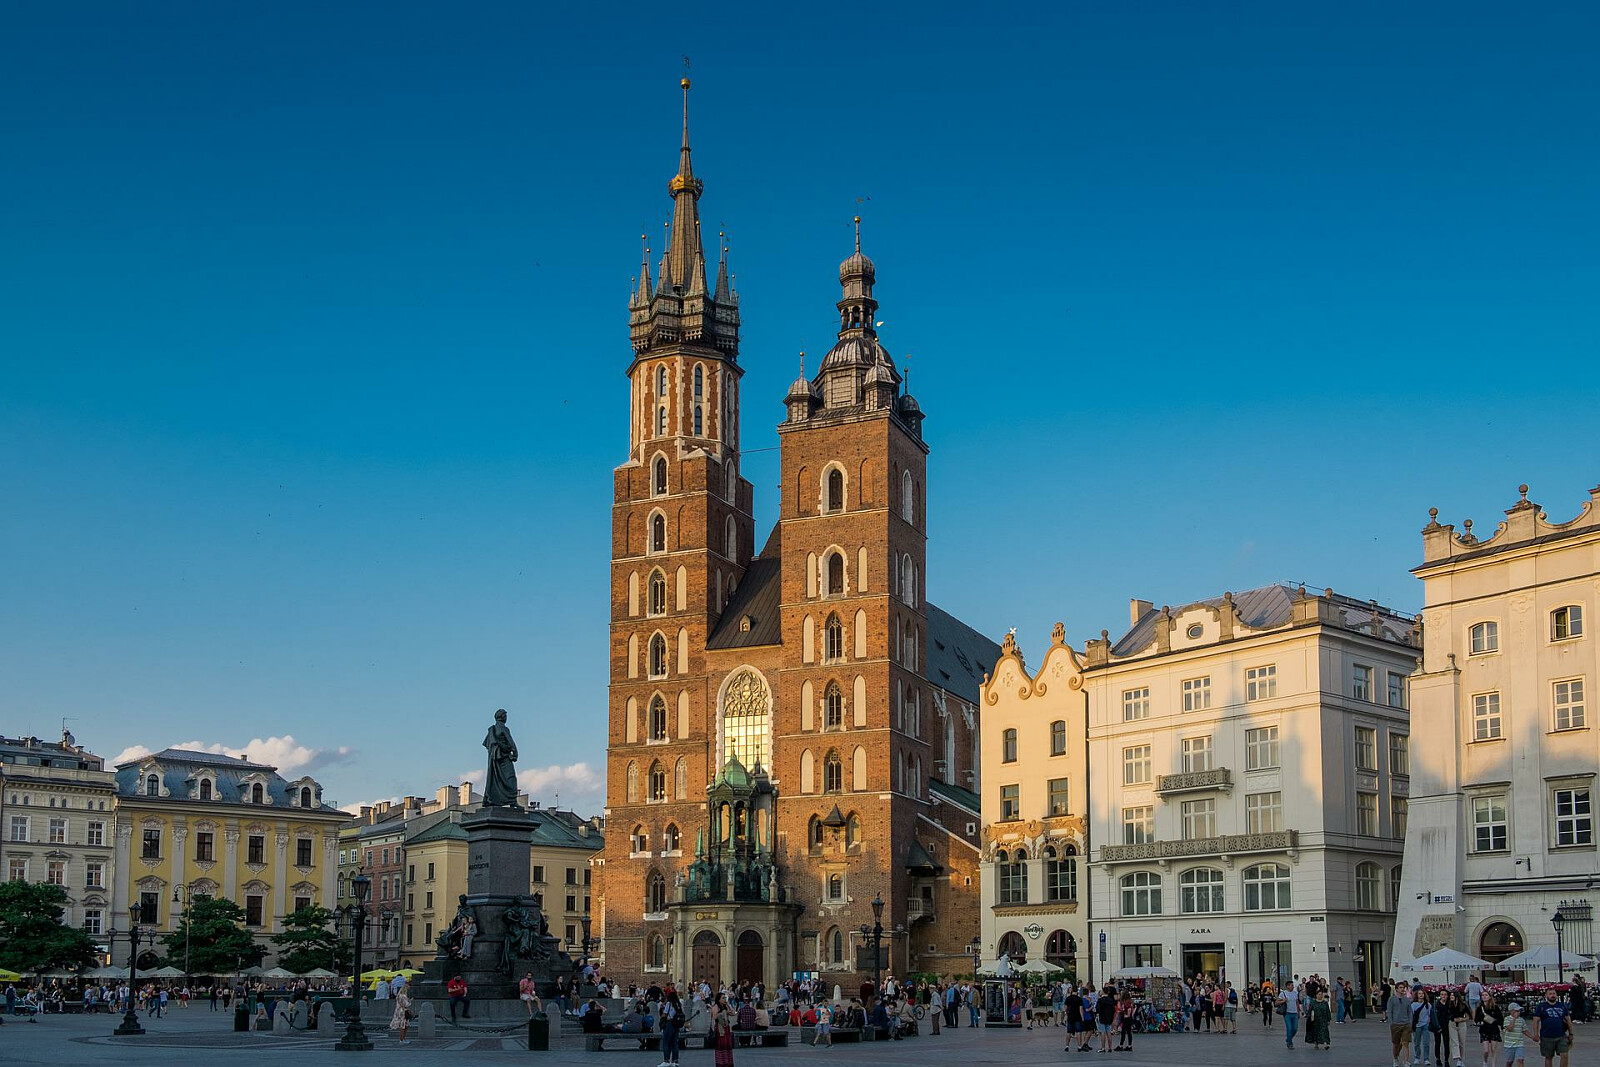 Kraków - Bazylika Mariacka - Image by krystianwin, www.pixabay.com